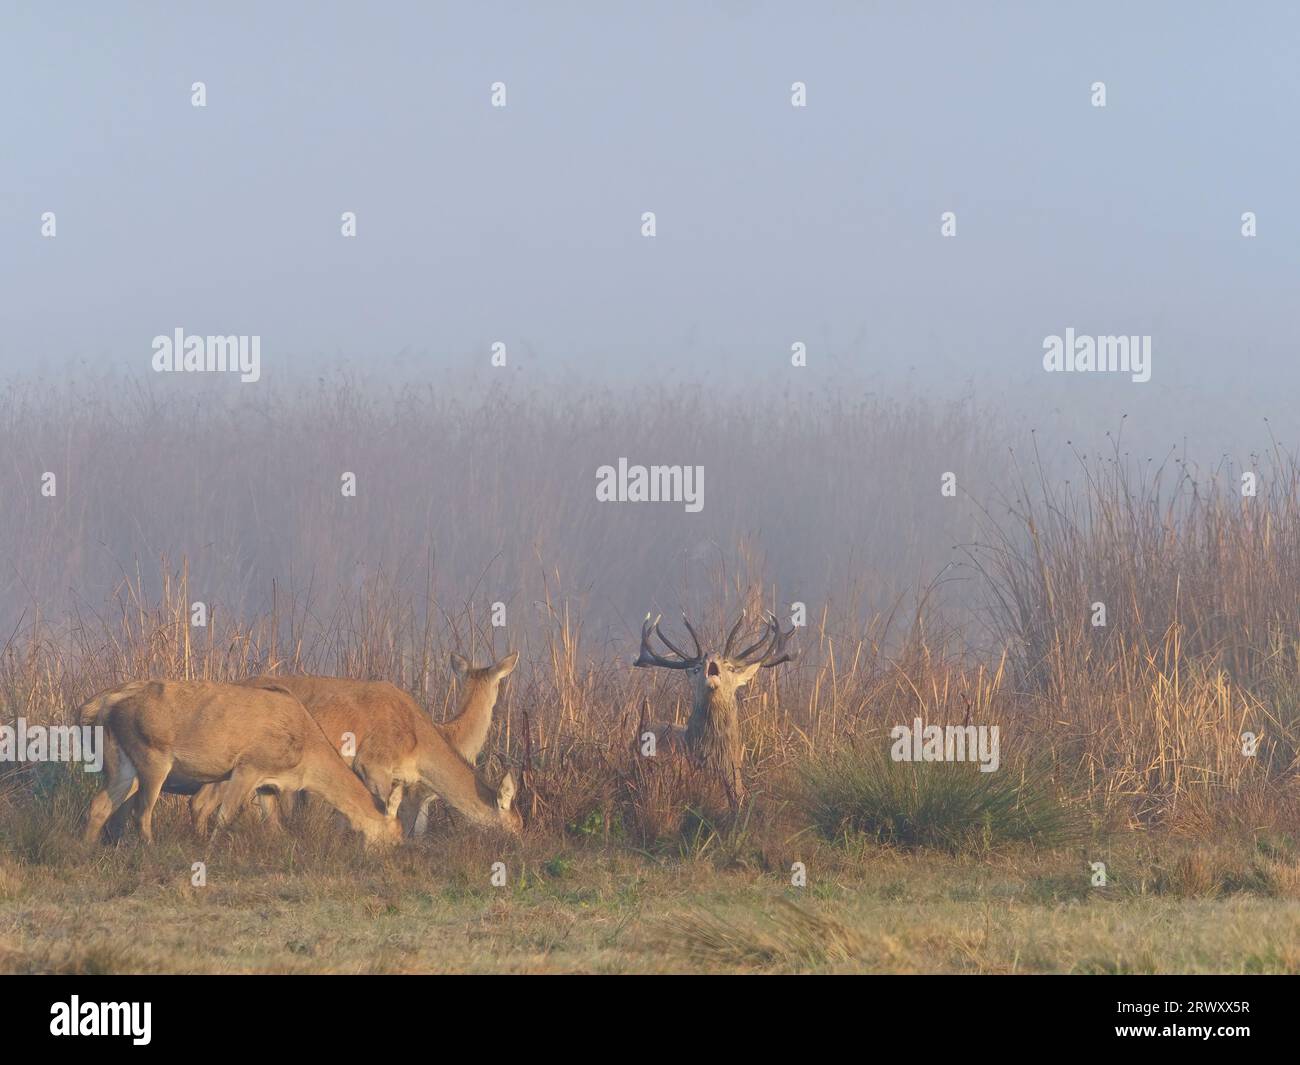 Inglés Un cervo rosso maschio piange accanto a un gruppo di femmine, tra le canne di una laguna, in un ambiente nebbioso. Cervus elaphus. Foto Stock